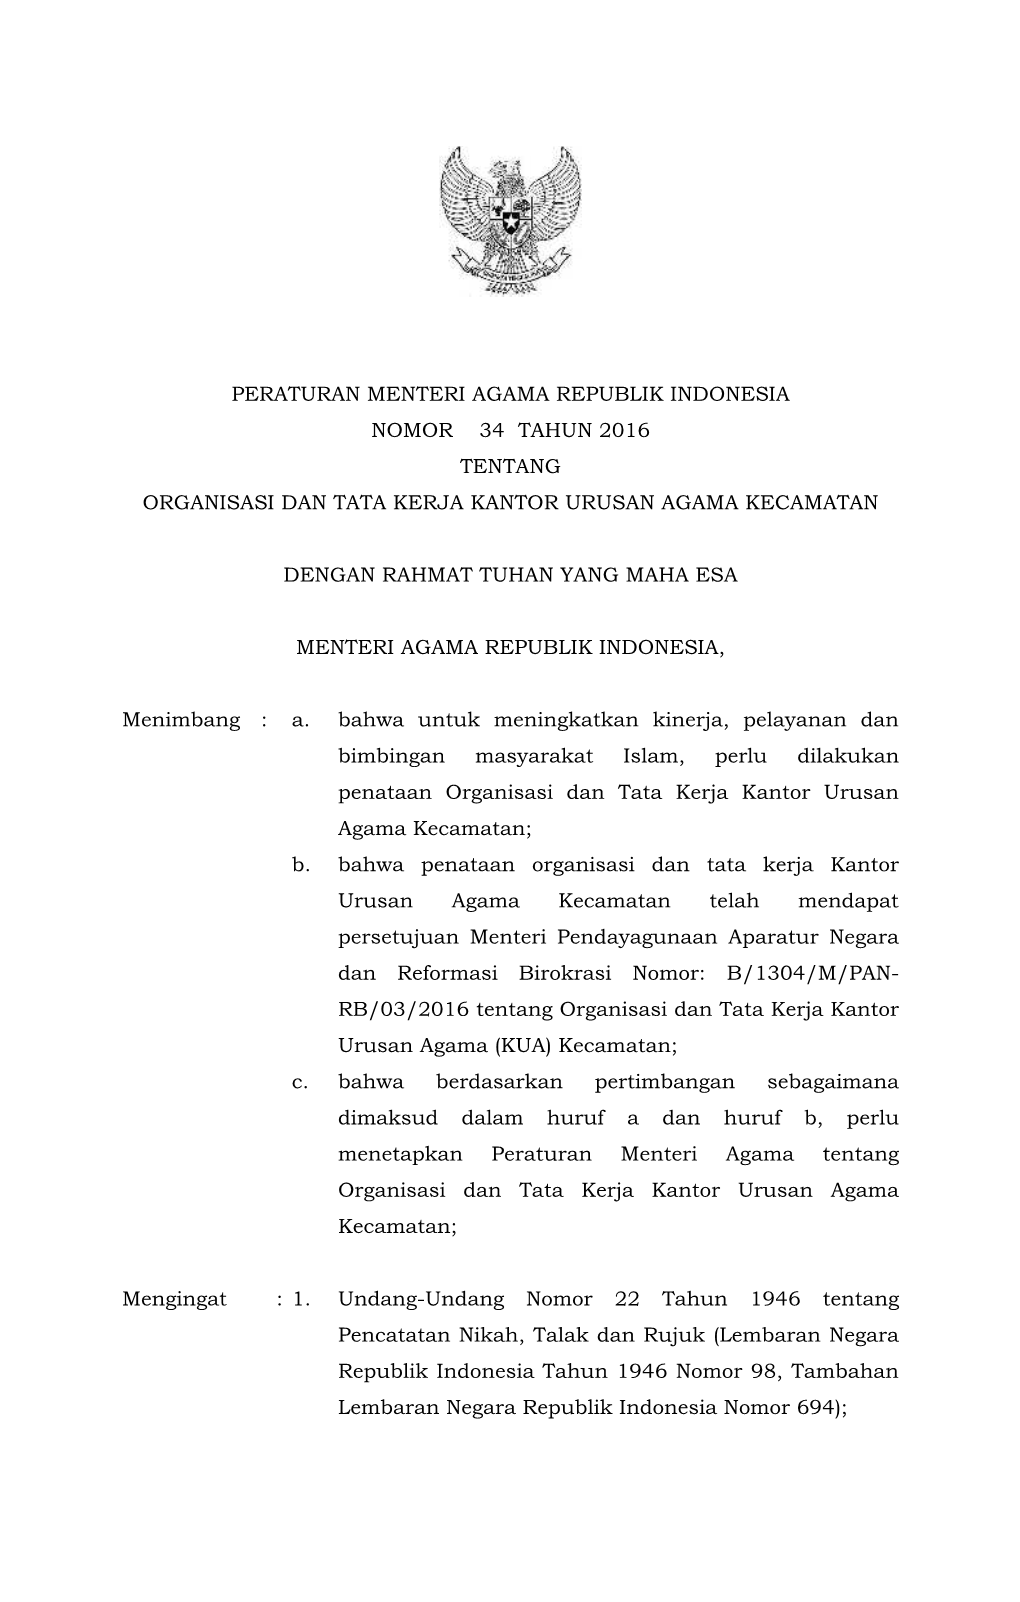 Peraturan Menteri Agama Republik Indonesia Nomor 34 Tahun 2016 Tentang Organisasi Dan Tata Kerja Kantor Urusan Agama Kecamatan